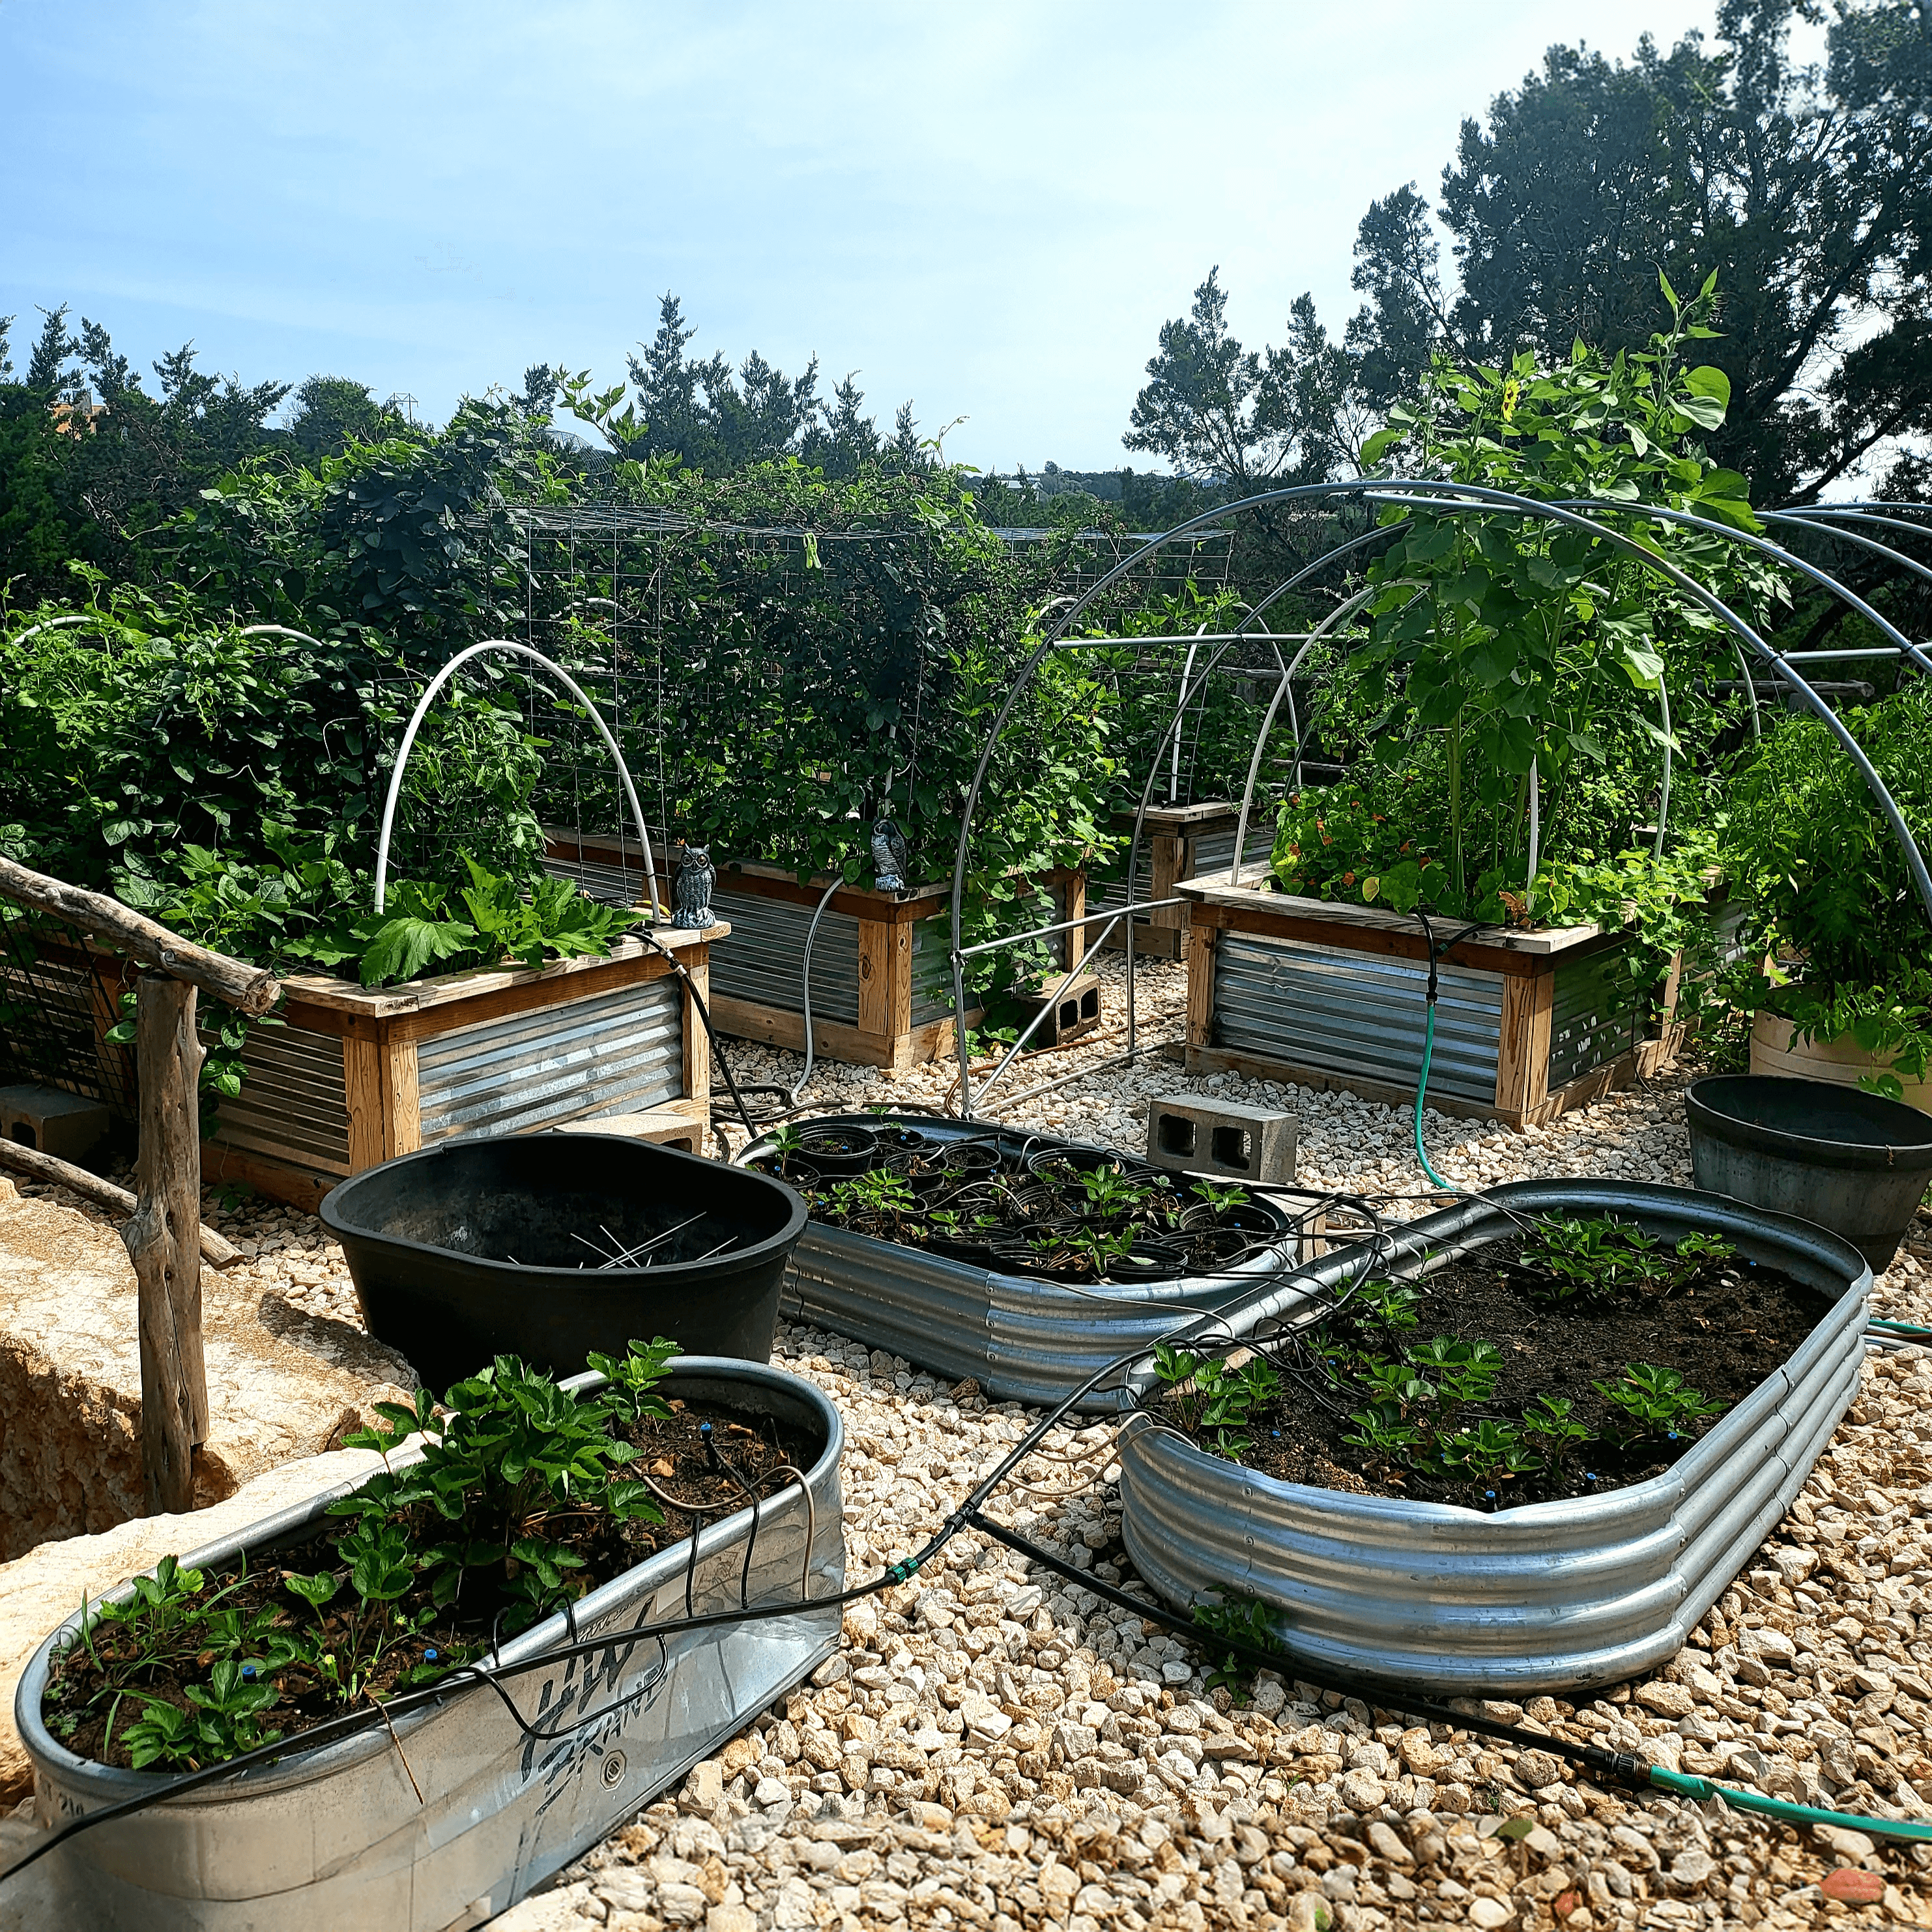 biozomeboost test gardens